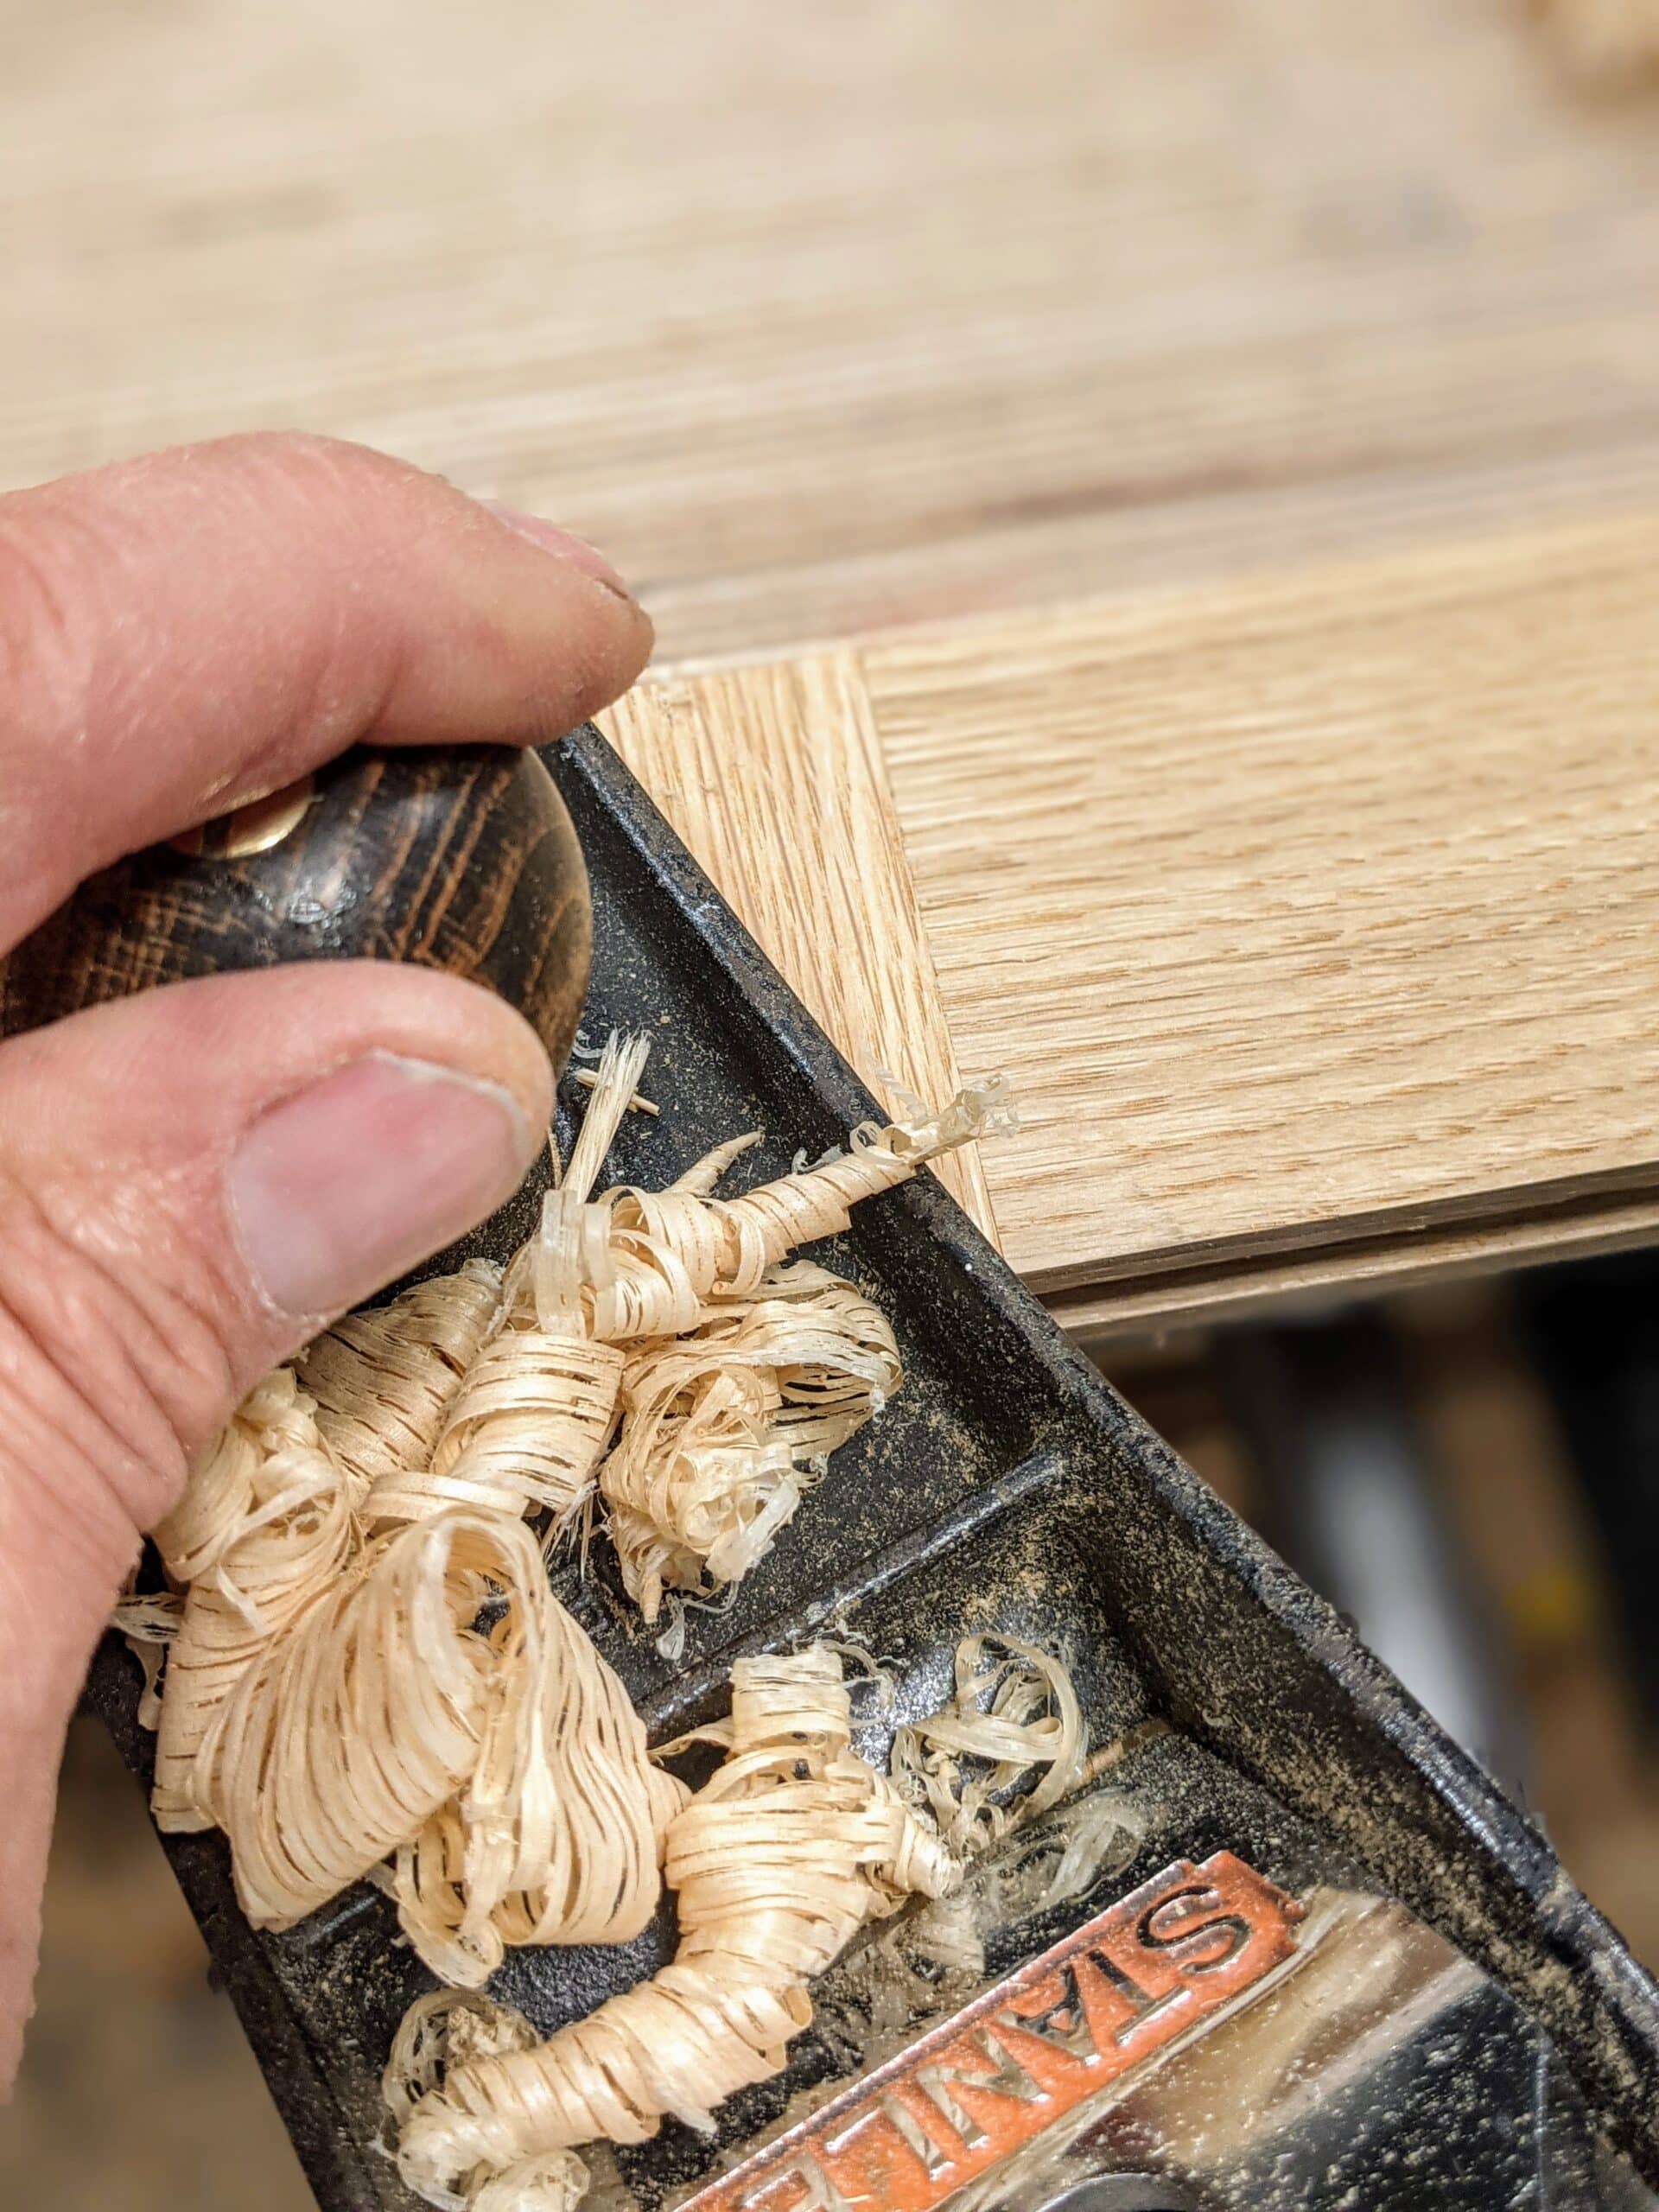 Blunt Instruments: Get Woodworking Week